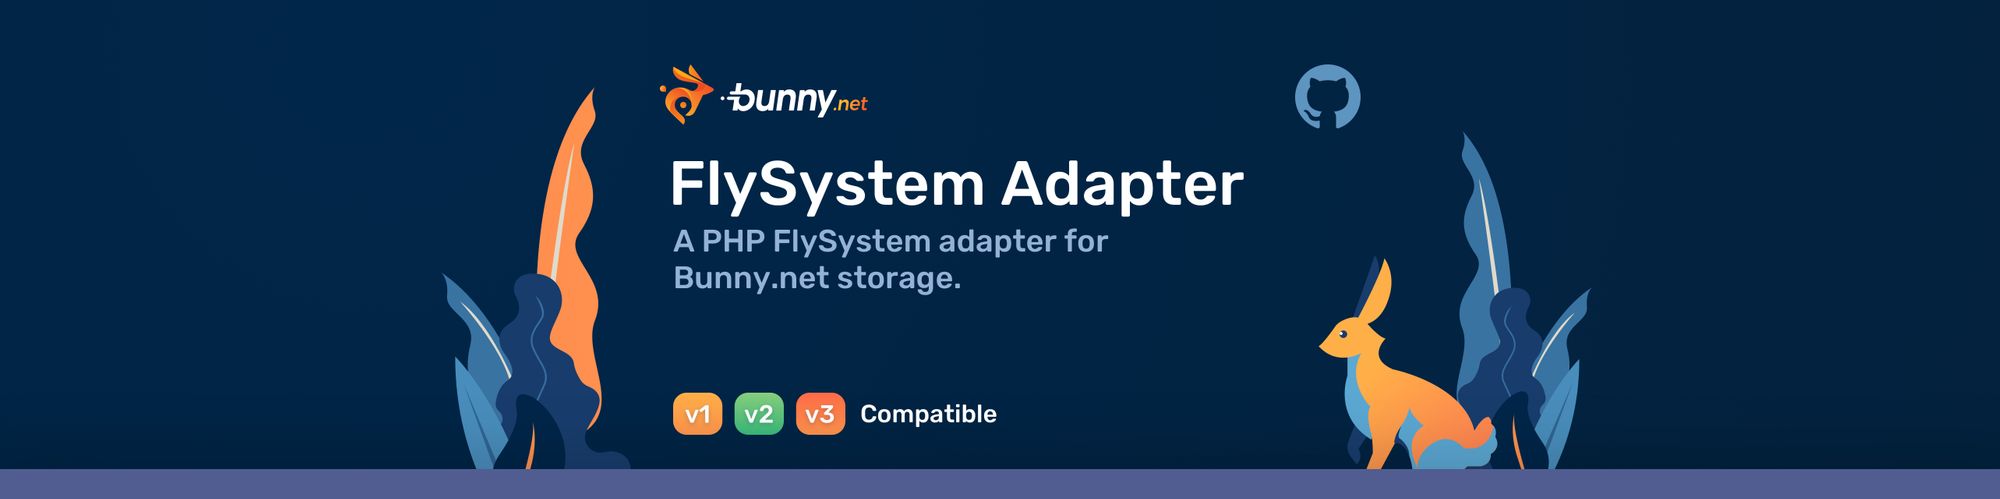 FlySystem Adapter for Bunny.net